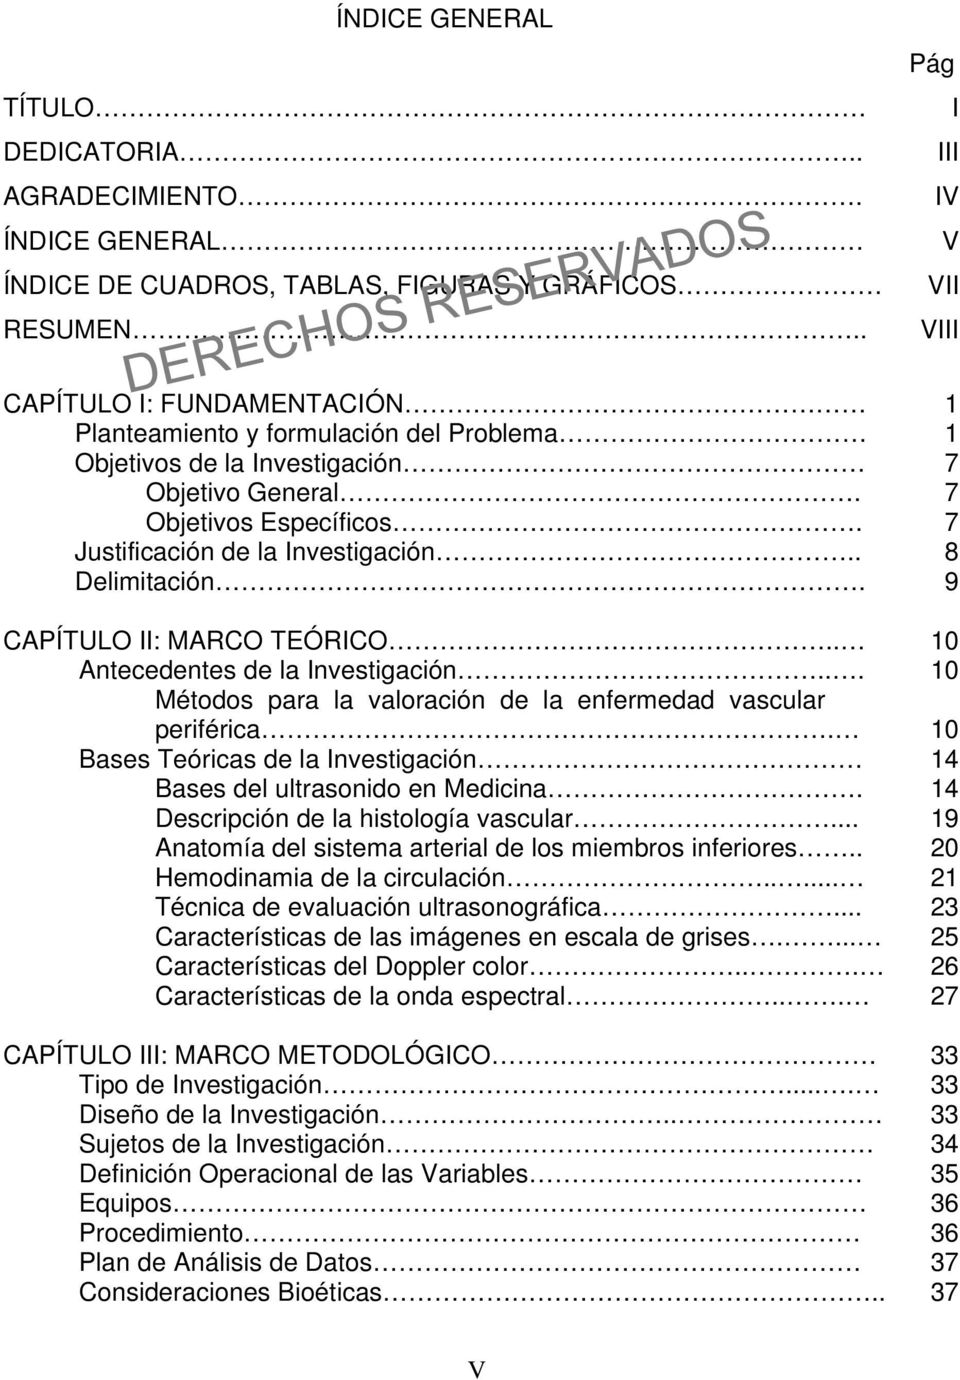 CAPÍTULO II: MARCO TEÓRICO.. Antecedentes de la Investigación... Métodos para la valoración de la enfermedad vascular periférica. Bases Teóricas de la Investigación Bases del ultrasonido en Medicina.